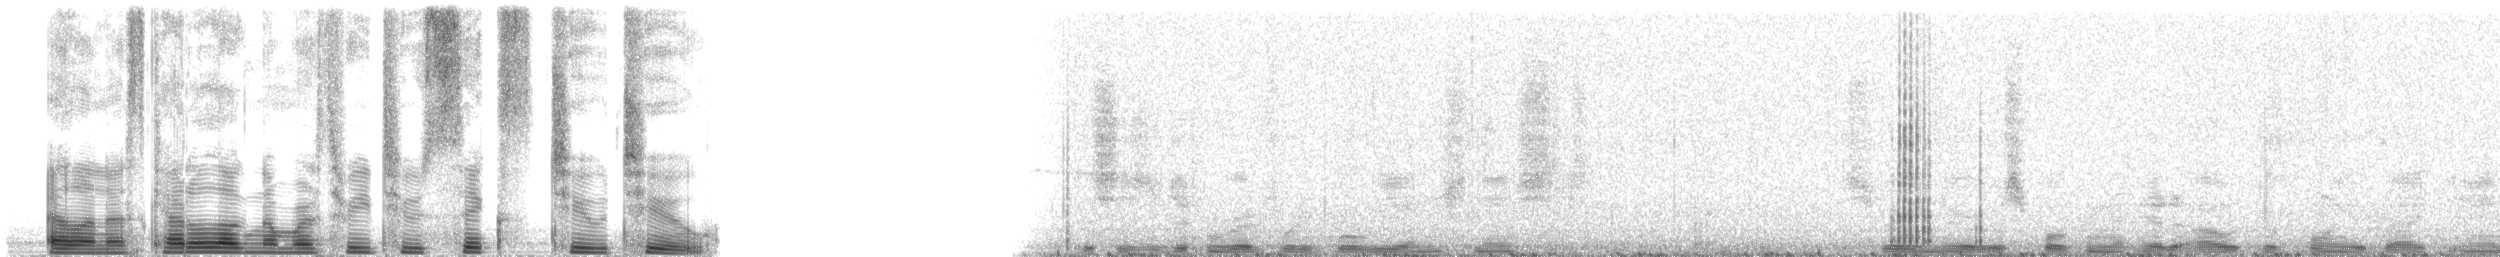 紅腳鰹鳥(rubripes) - ML32622